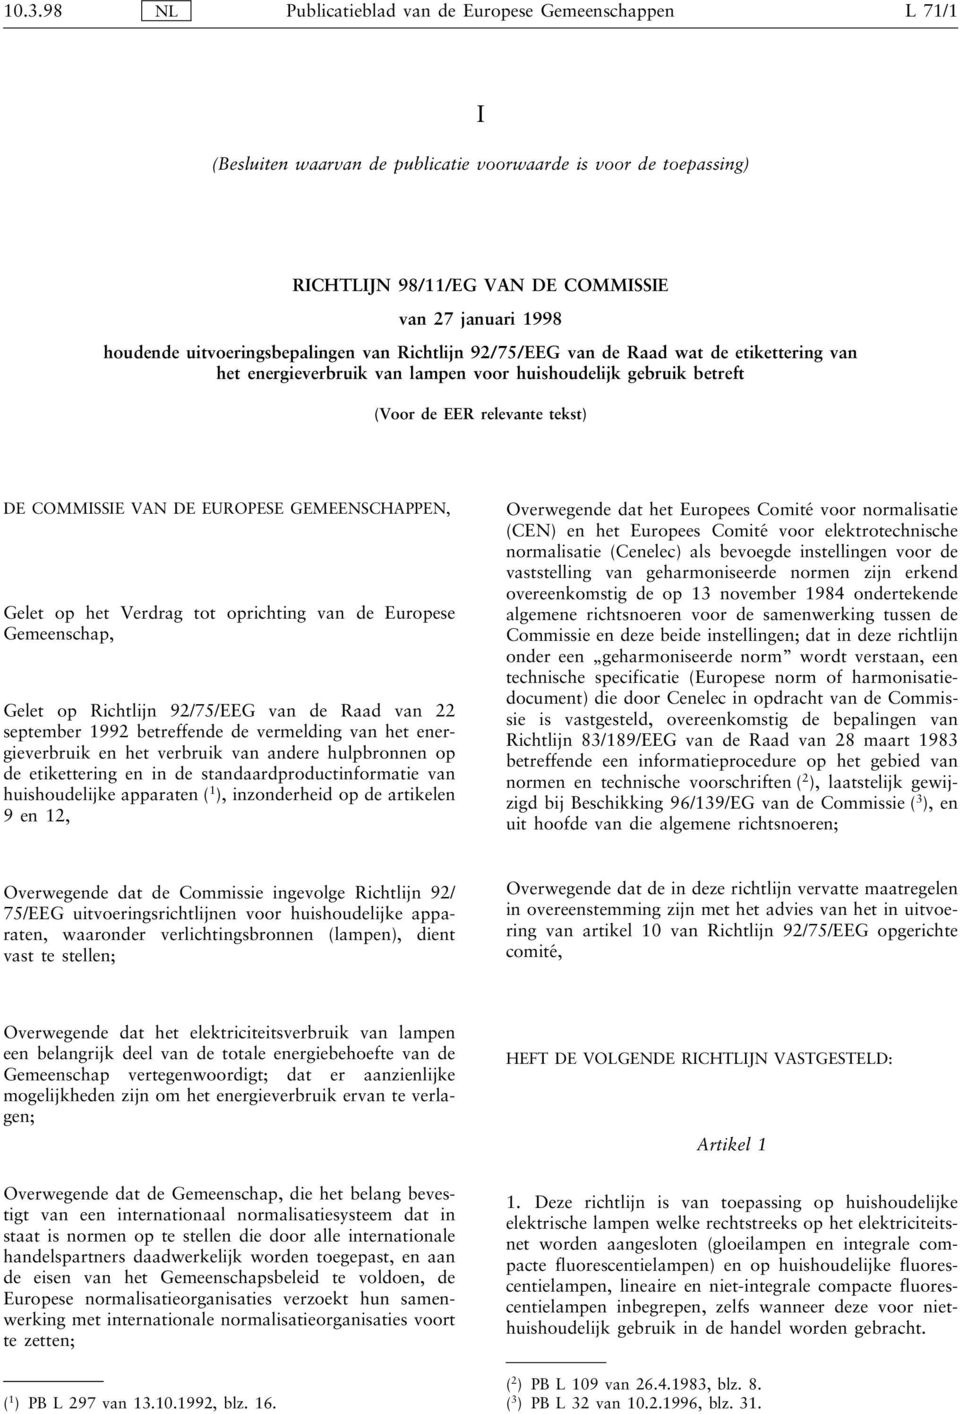 EUROPESE GEMEENSCHAPPEN, Gelet op het Verdrag tot oprichting van de Europese Gemeenschap, Gelet op Richtlijn 92/75/EEG van de Raad van 22 september 1992 betreffende de vermelding van het